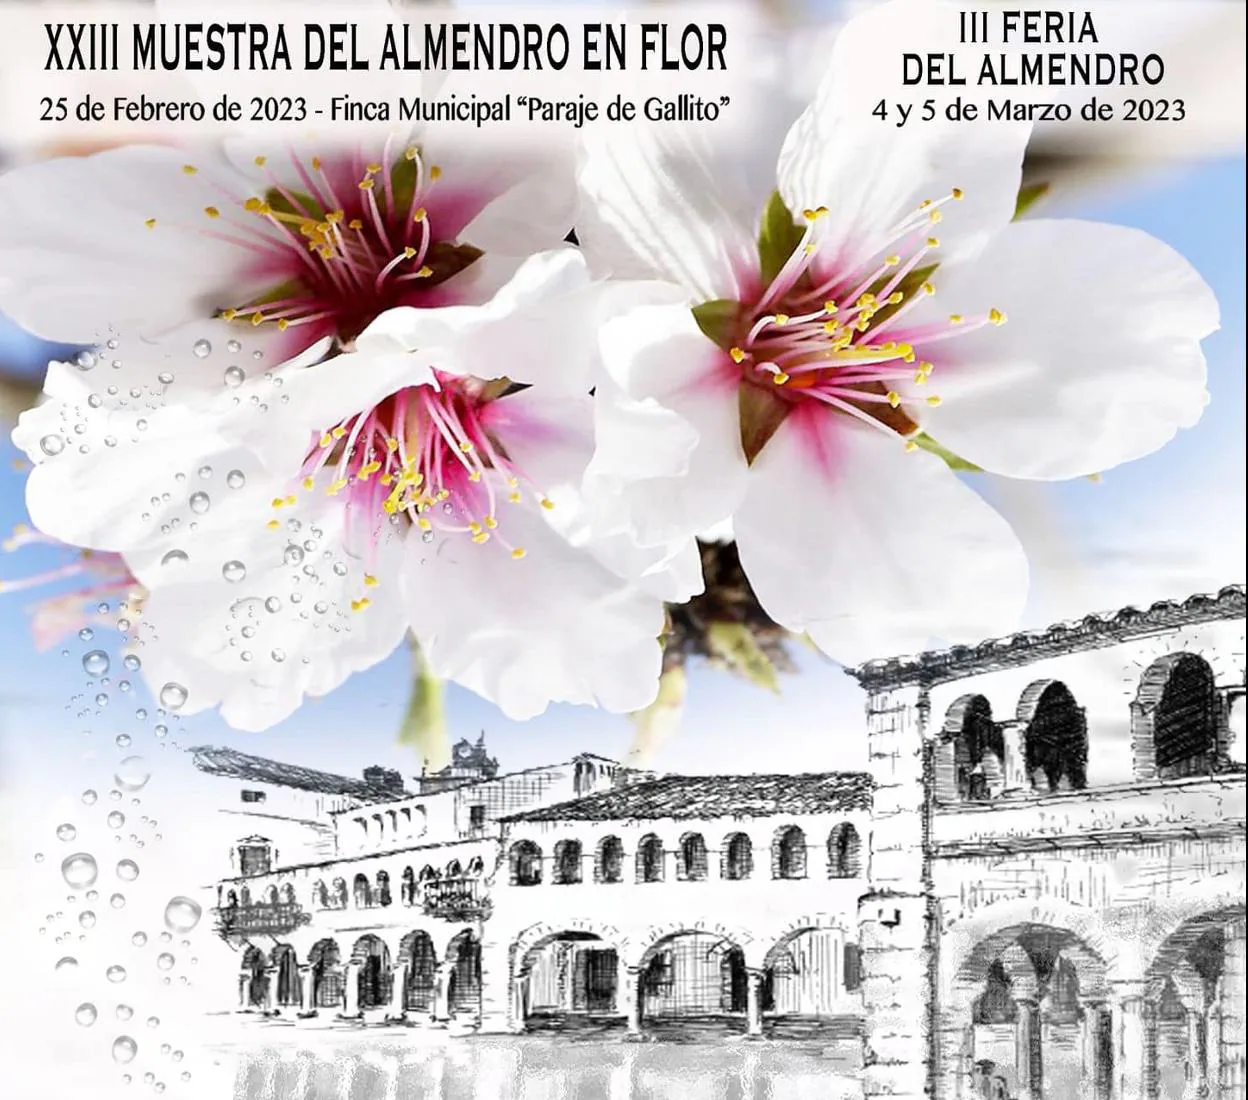 La XXIII Muestra del Almendro en Flor de Garrovillas de Alconétar se  realizará en el paraje de Gallito el próximo sábado | Hoy